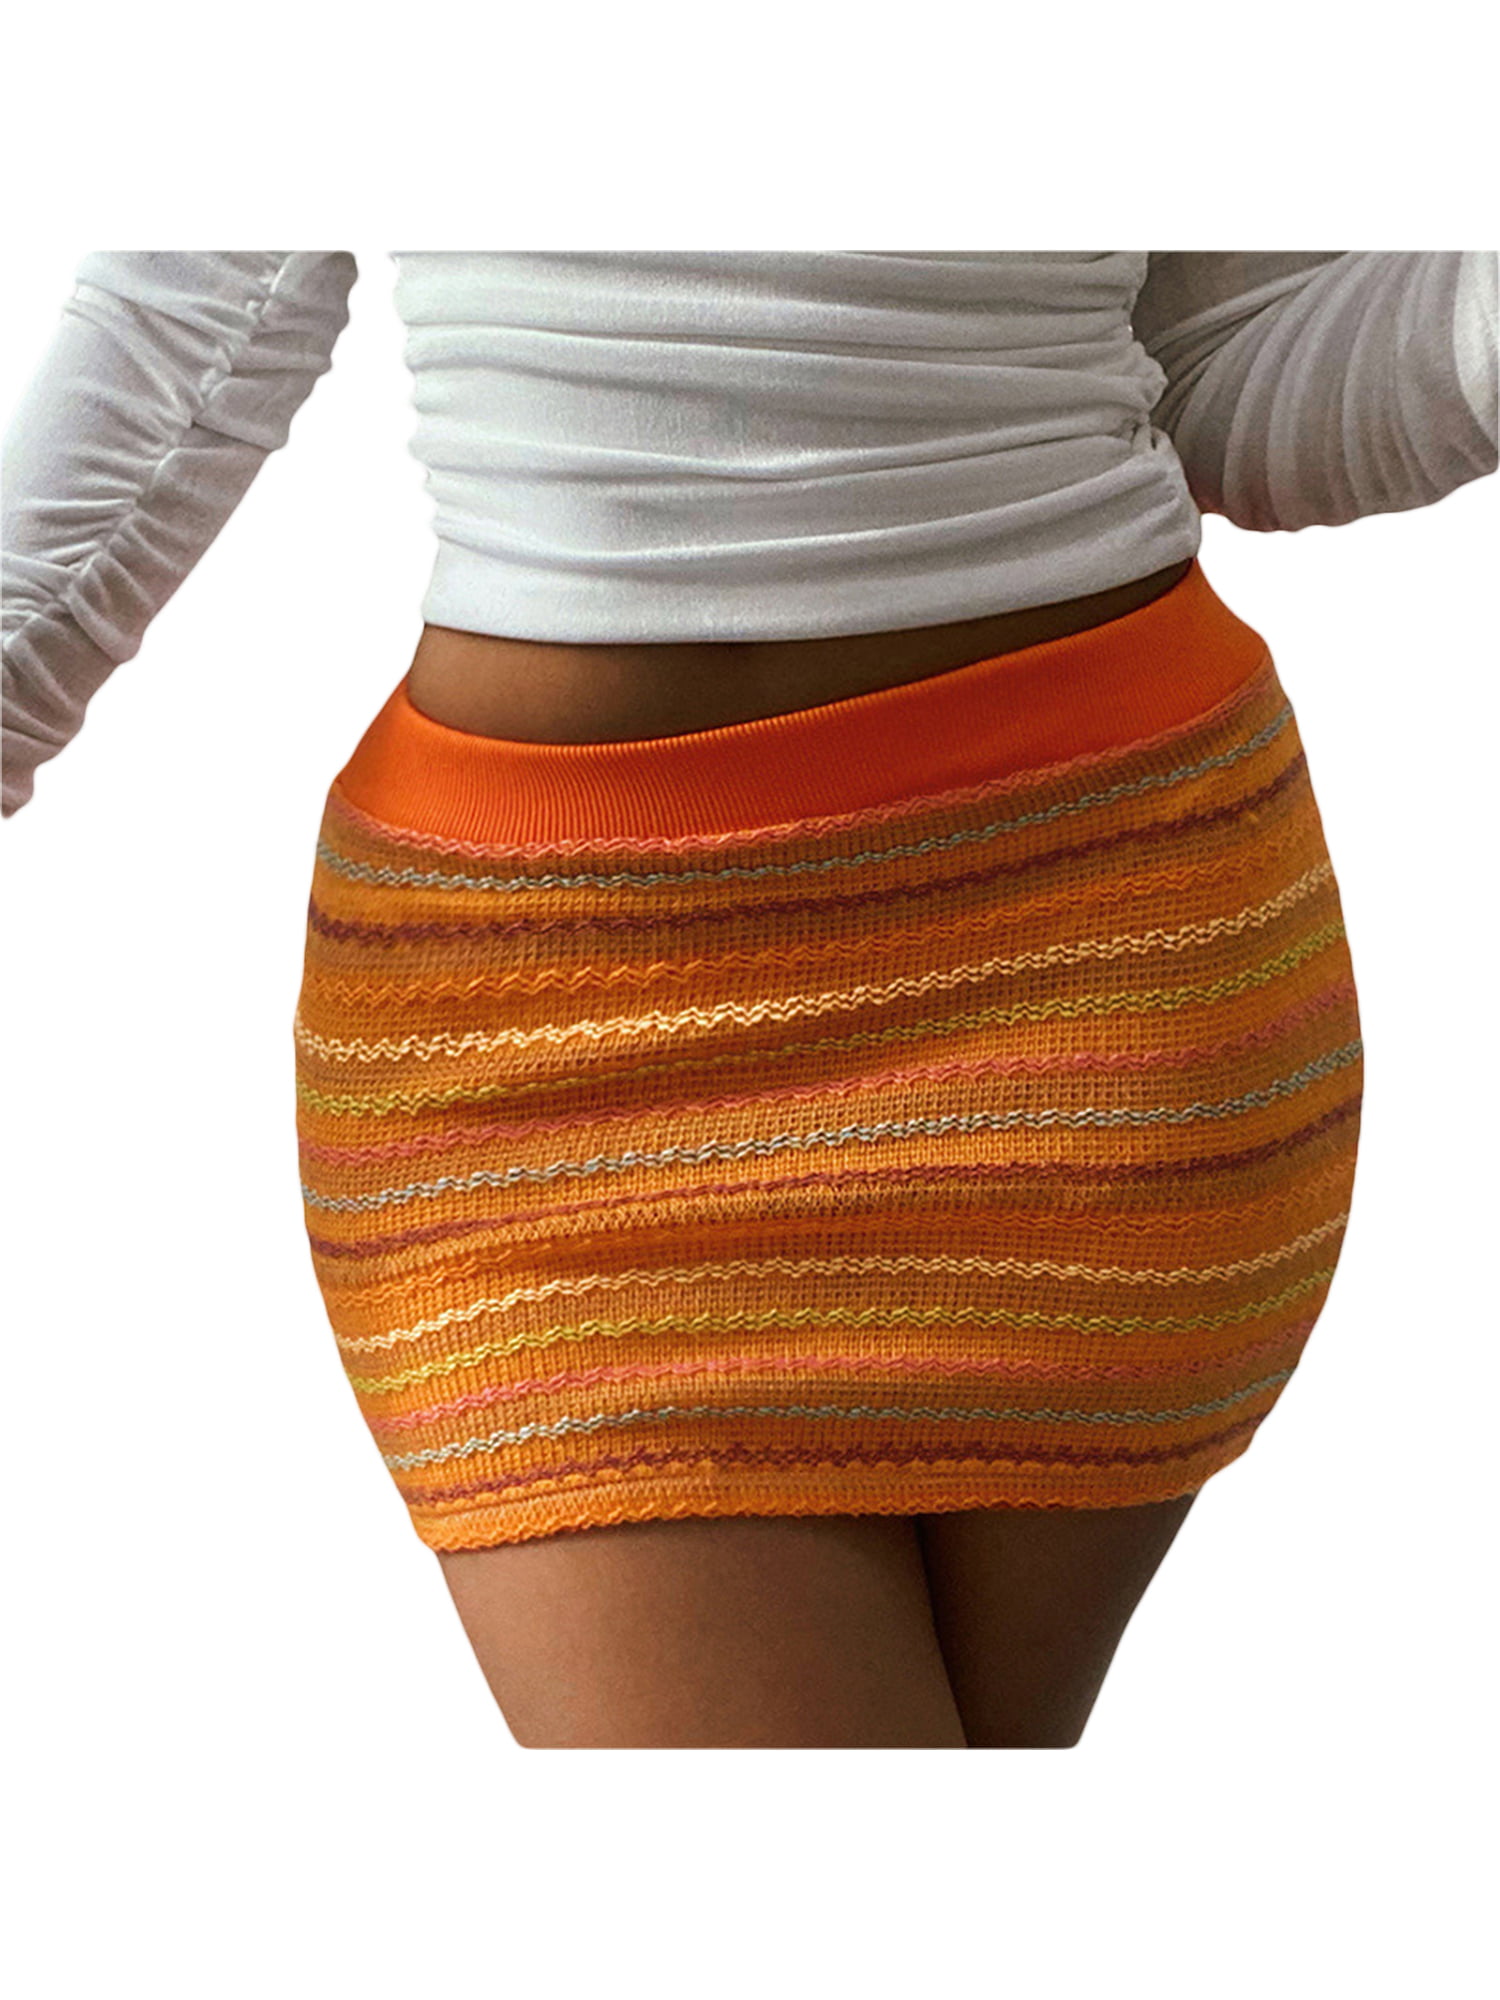 Imcute - Imcute Women's Bodycon Mini Skirt Casual High Waist Striped ...